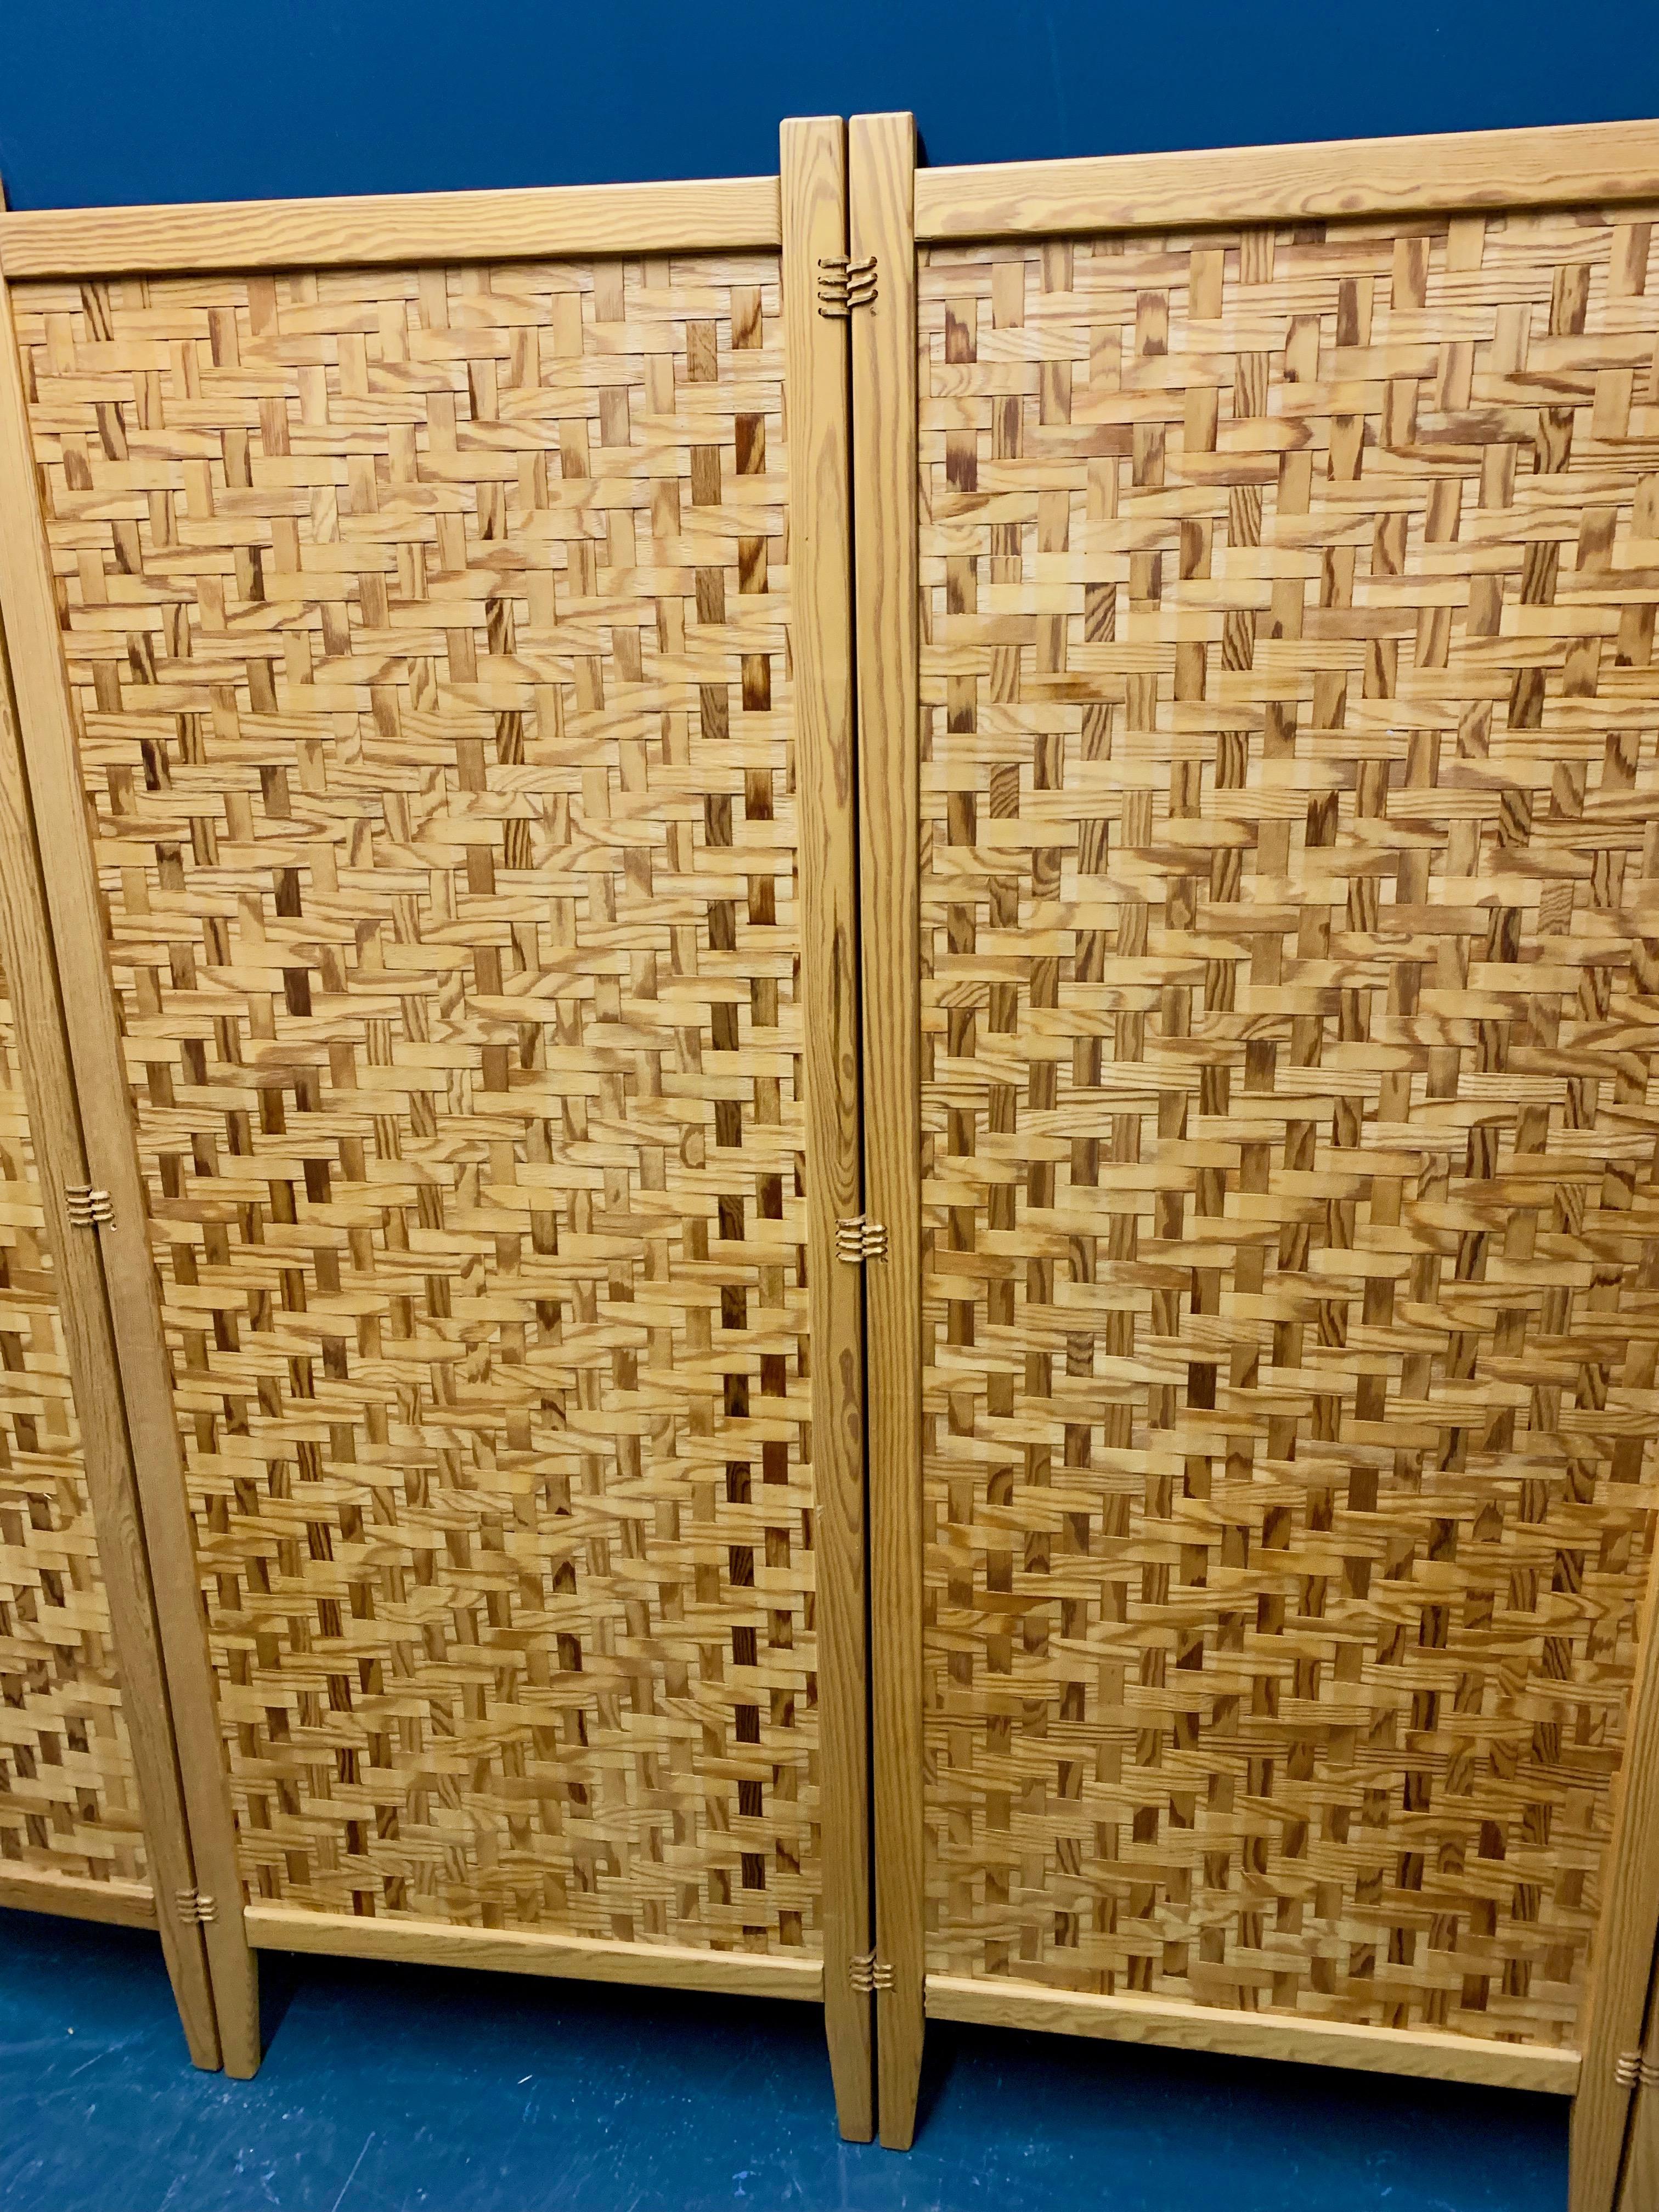 Hergestellt aus geflochtenen Kiefernstreifen in massiven Holzrahmen, die mit Leder verbunden sind.

 